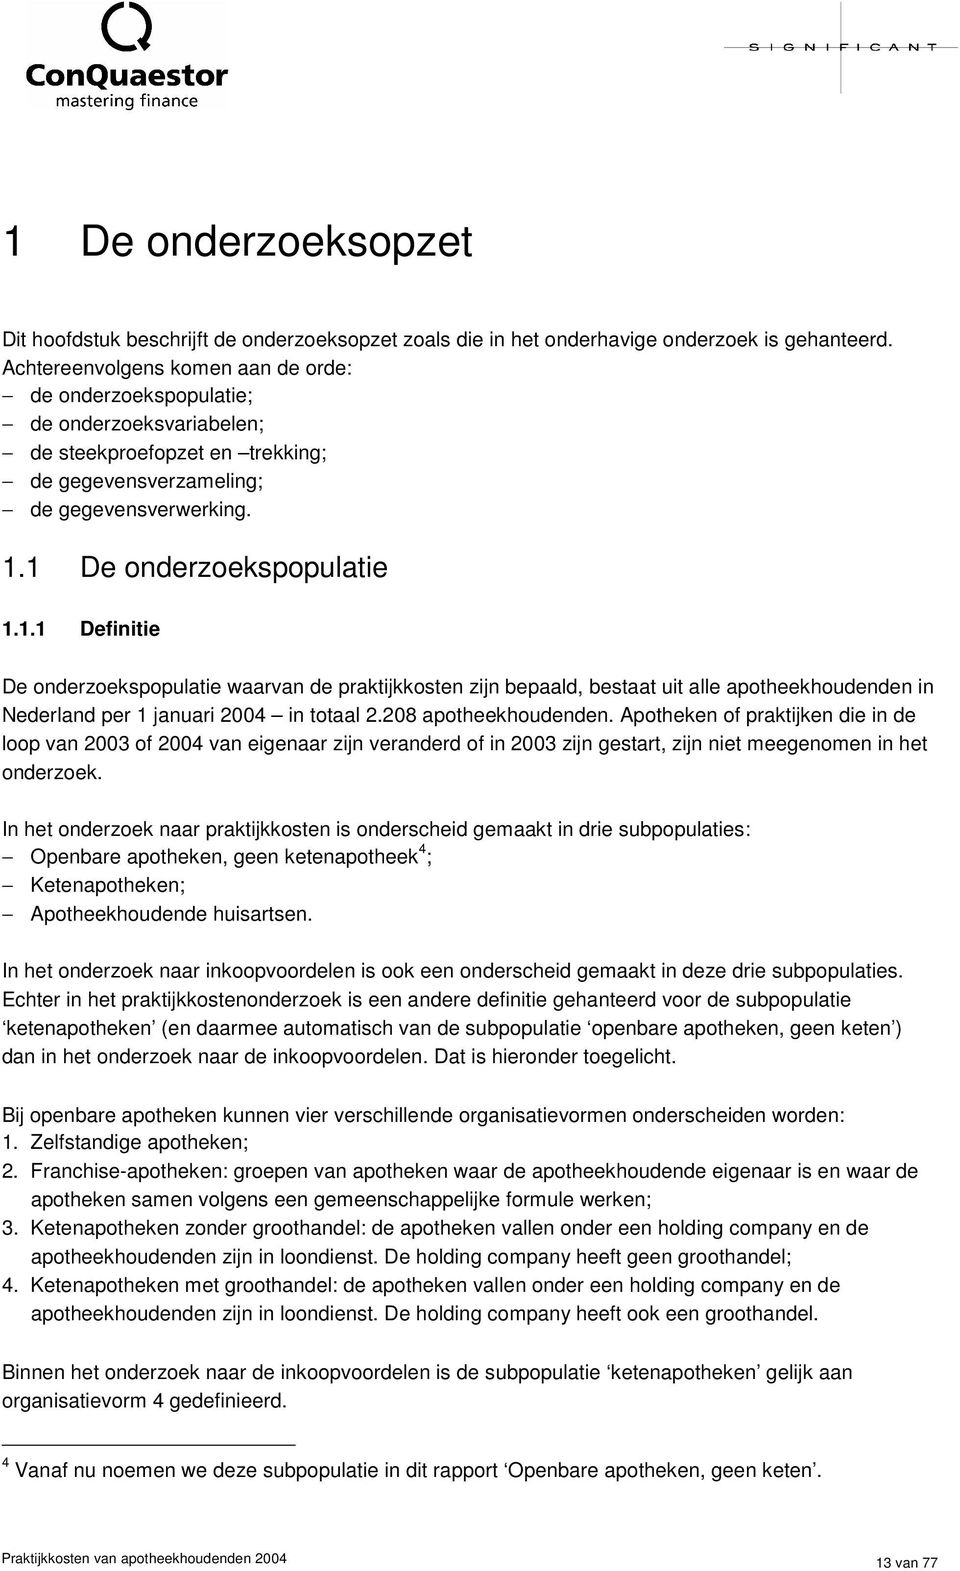 1 De onderzoekspopulatie 1.1.1 Definitie De onderzoekspopulatie waarvan de praktijkkosten zijn bepaald, bestaat uit alle apotheekhoudenden in Nederland per 1 januari 2004 in totaal 2.